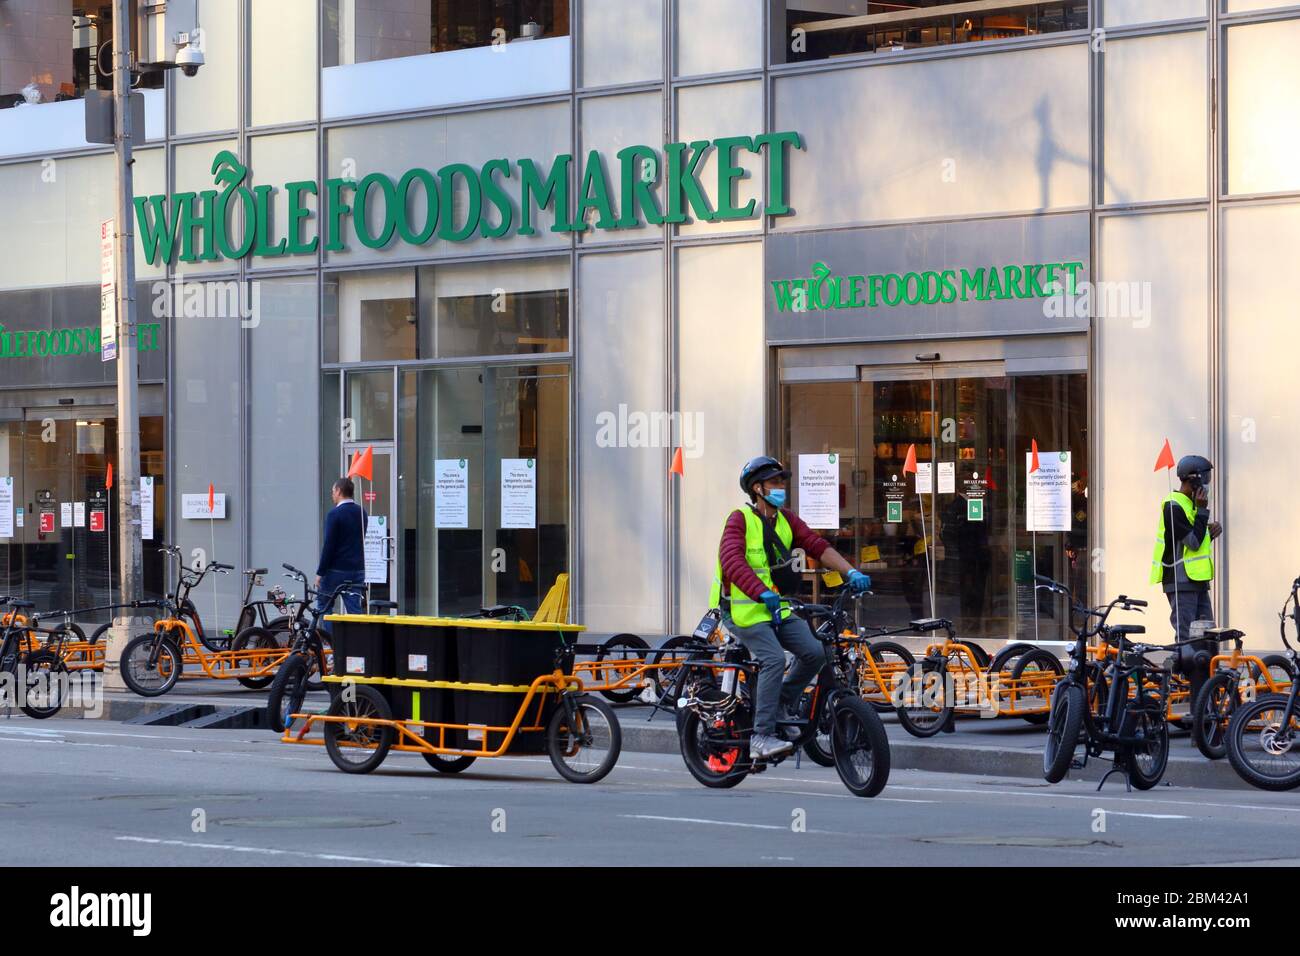 Entrega de alimentos bicicletas fuera de Whole Foods Market Bryant Park en Nueva York se convirtió en un supermercado oscuro para cumplir en línea... VER MÁS INFORMACIÓN PARA VER LA LEYENDA COMPLETA Foto de stock